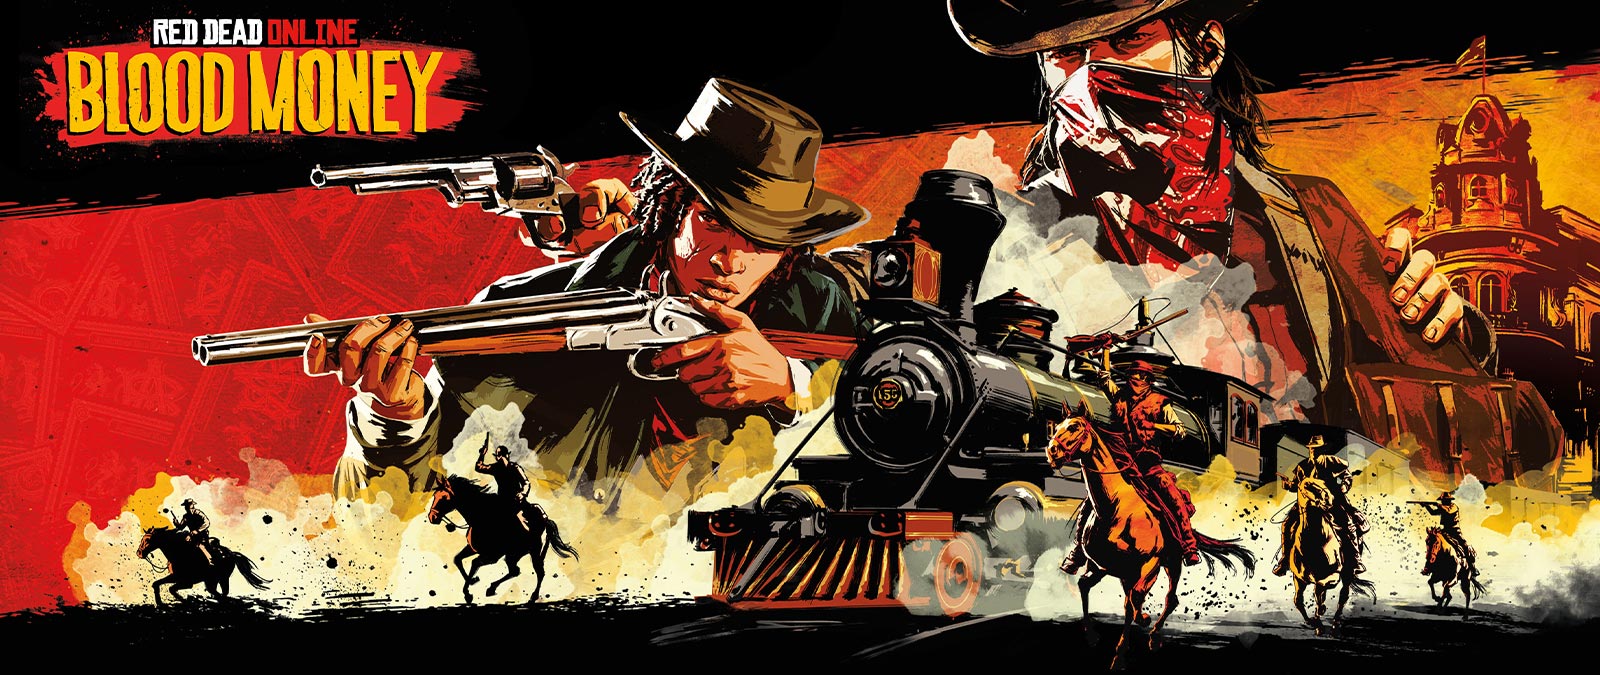 Red Dead Online: Blood Money、馬に乗った武装強盗たちが列車を襲っています。